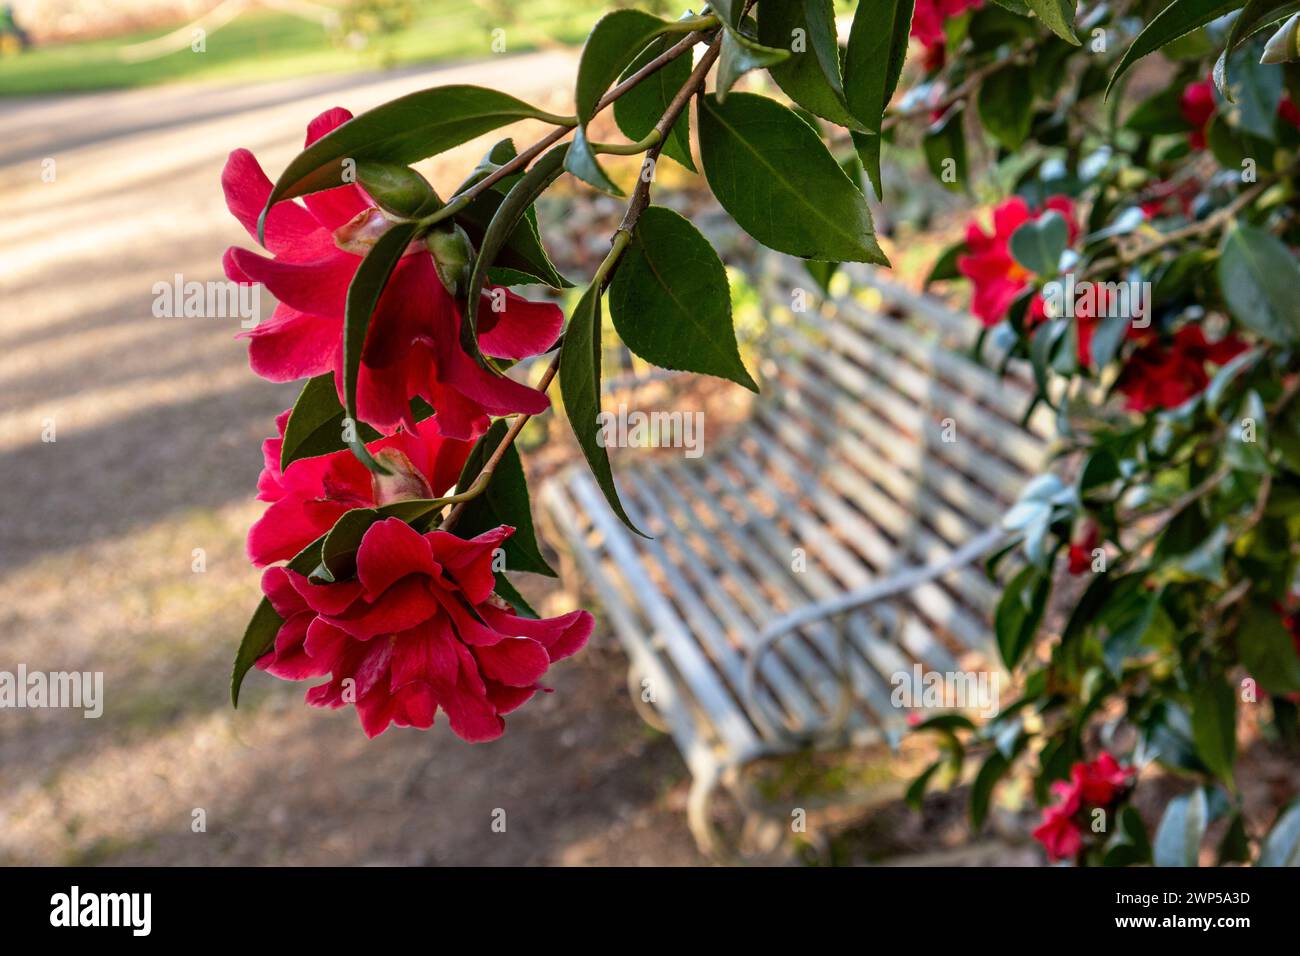 Camellia Japonica Rot bei tiefem Winterlicht am Nachmittag mit traditioneller Gartenbank aus weißem Metall dahinter. Ruhiger, reflektierender Ort der Besinnung. Kamelien Japonica die rote Familie Theaceae blüht zwischen Januar und März gewöhnliche Kamelien oder japanische Kamelien Stockfoto